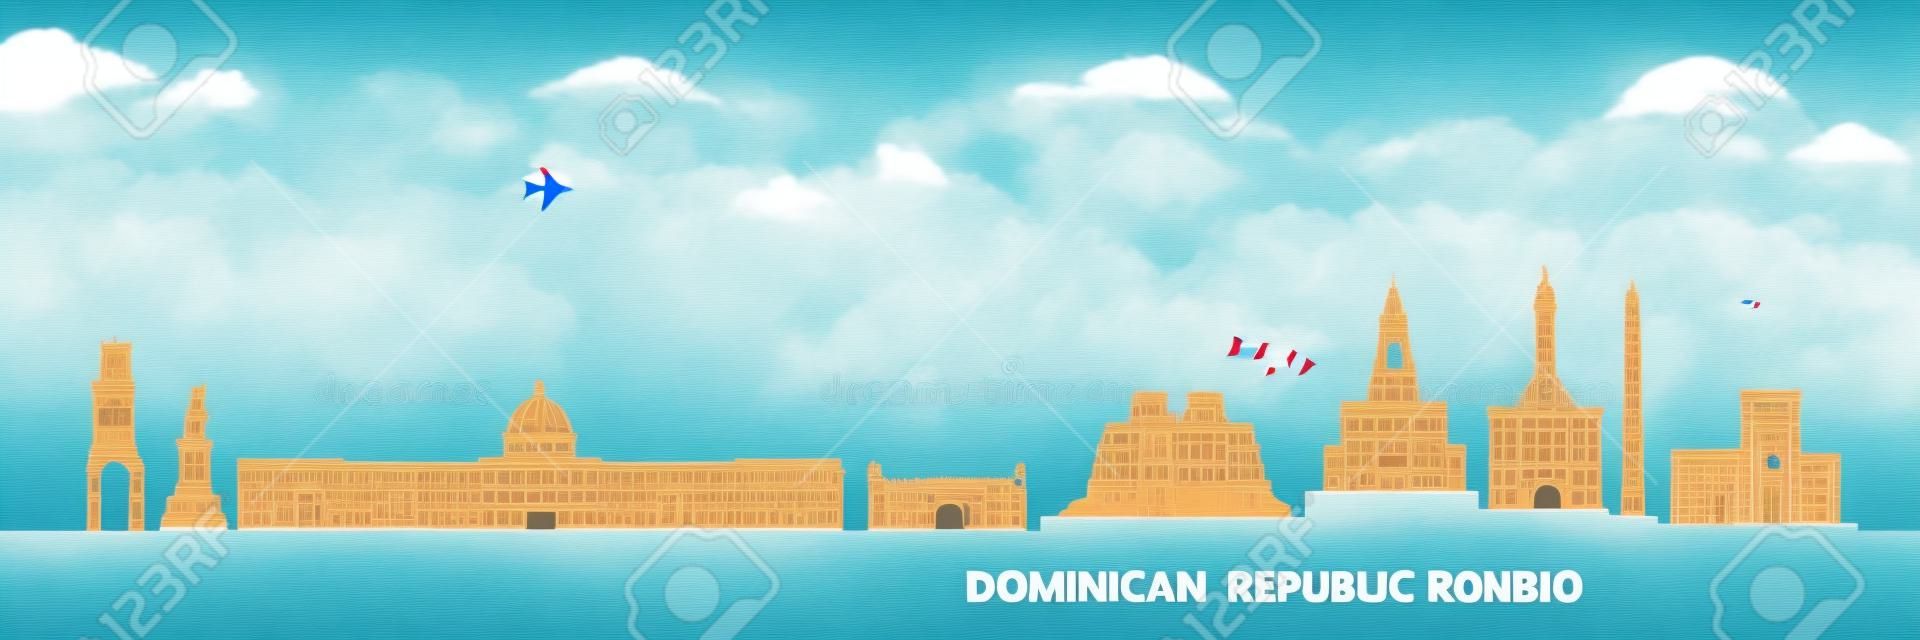 Dominican Republic  travel destination grand vector illustration.